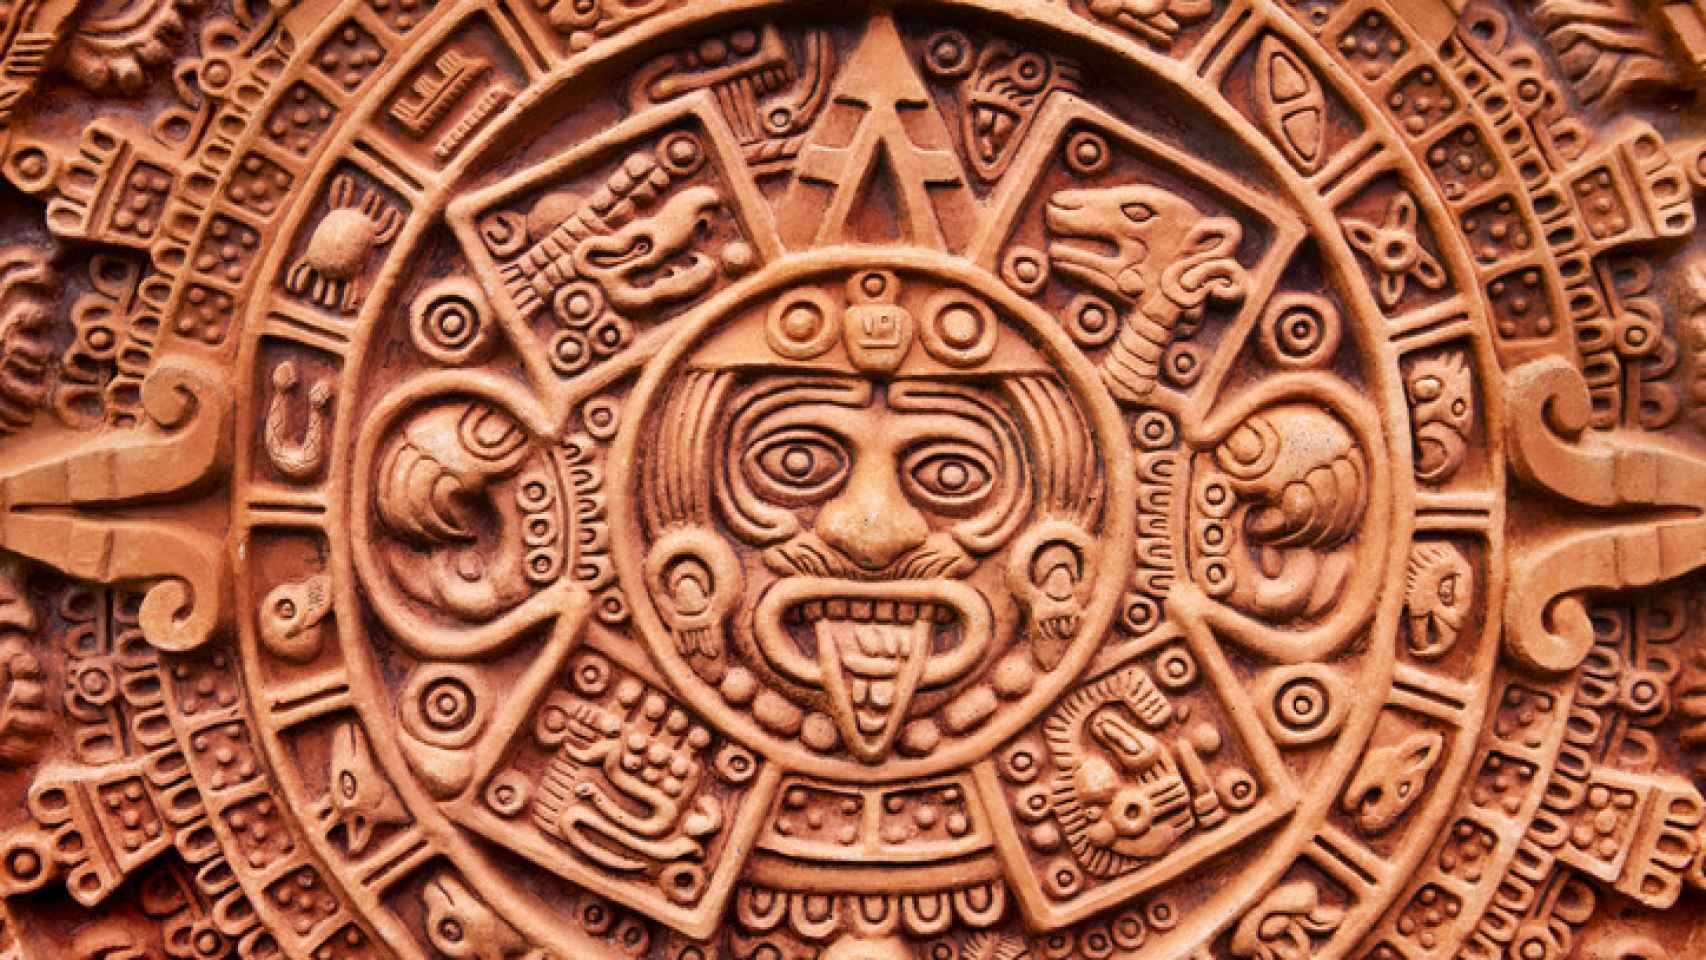 Escultura azteca.